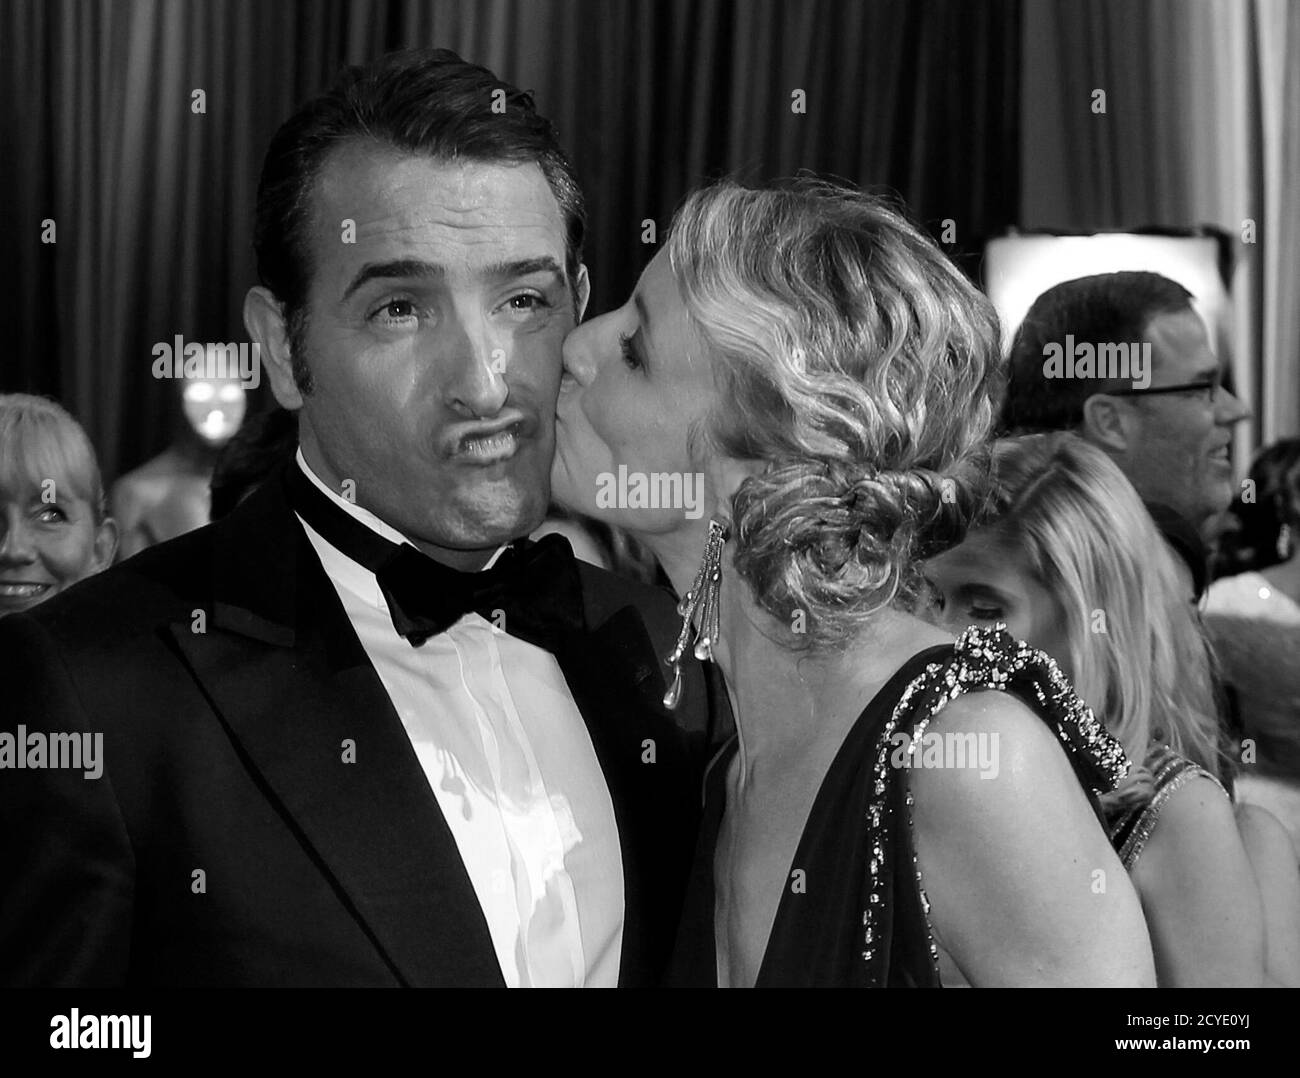 Jean dujardin and wife alexandra lamy Banque d'images noir et blanc - Alamy